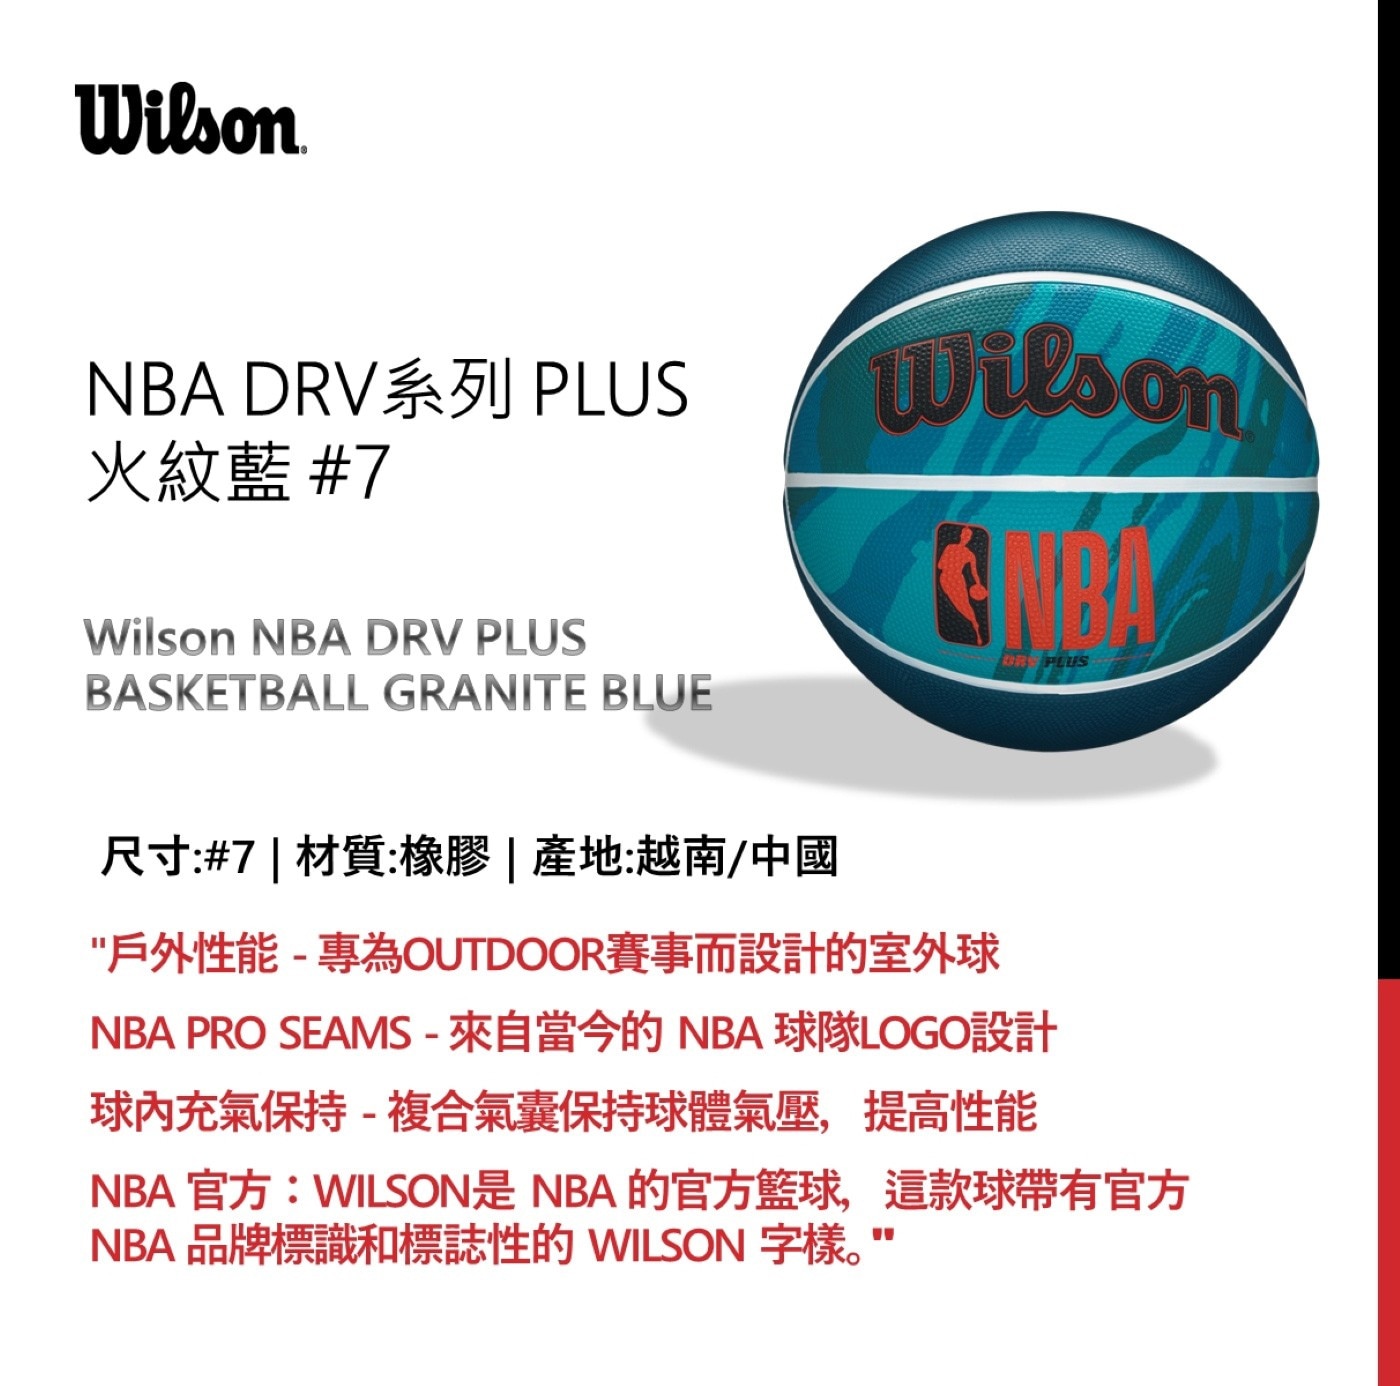 威爾森 7號橡膠籃球 NBA DRV 系列，PLUS 火紋藍，專為 outdoor 賽事而設計的室外球，複合氣囊保持球體氣壓，提高性能。